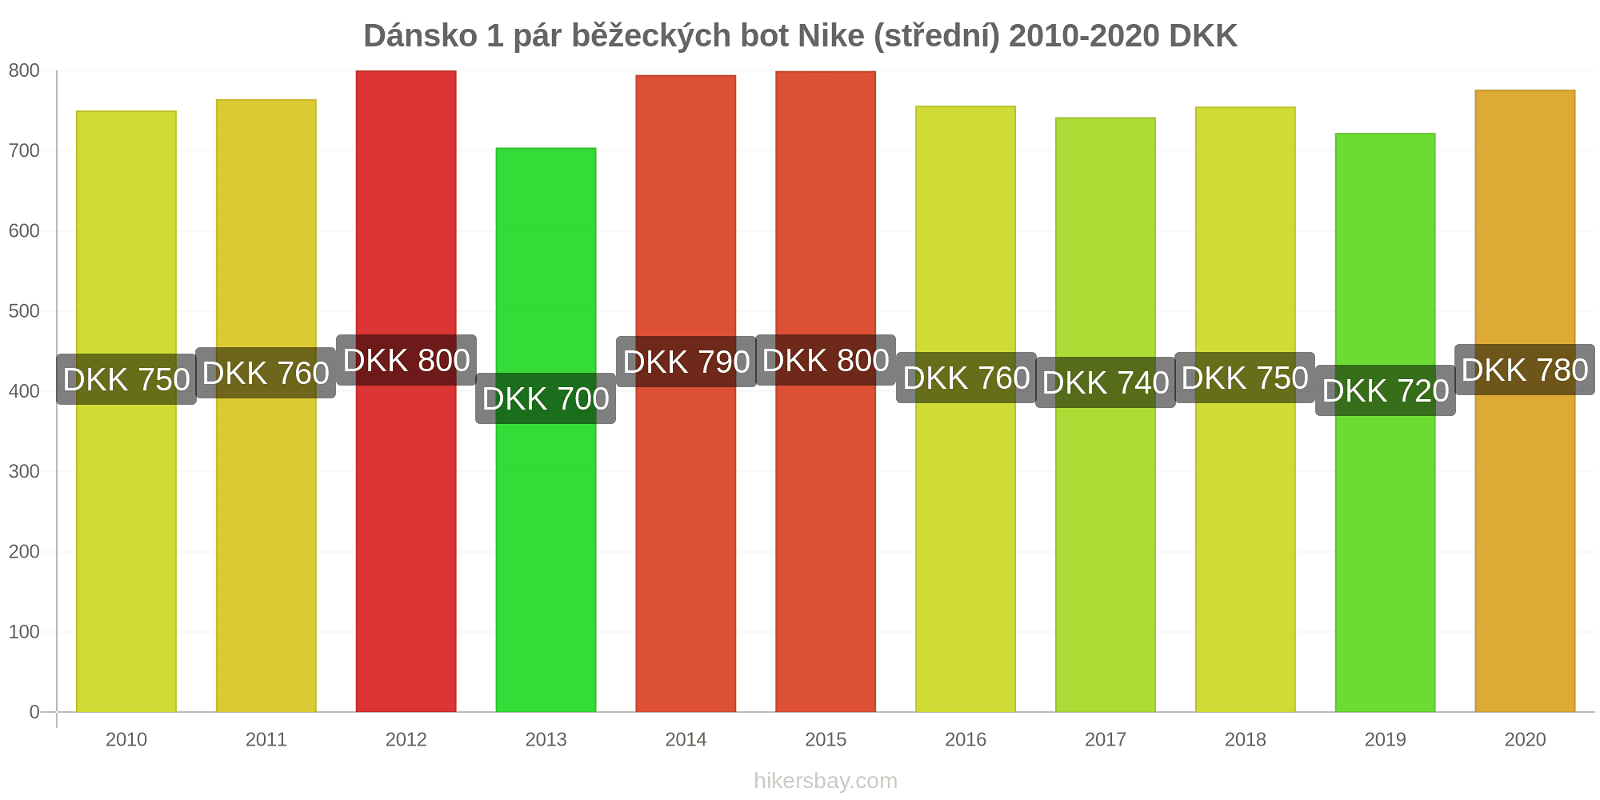 Dánsko změny cen 1 pár běžeckých bot Nike (střední) hikersbay.com